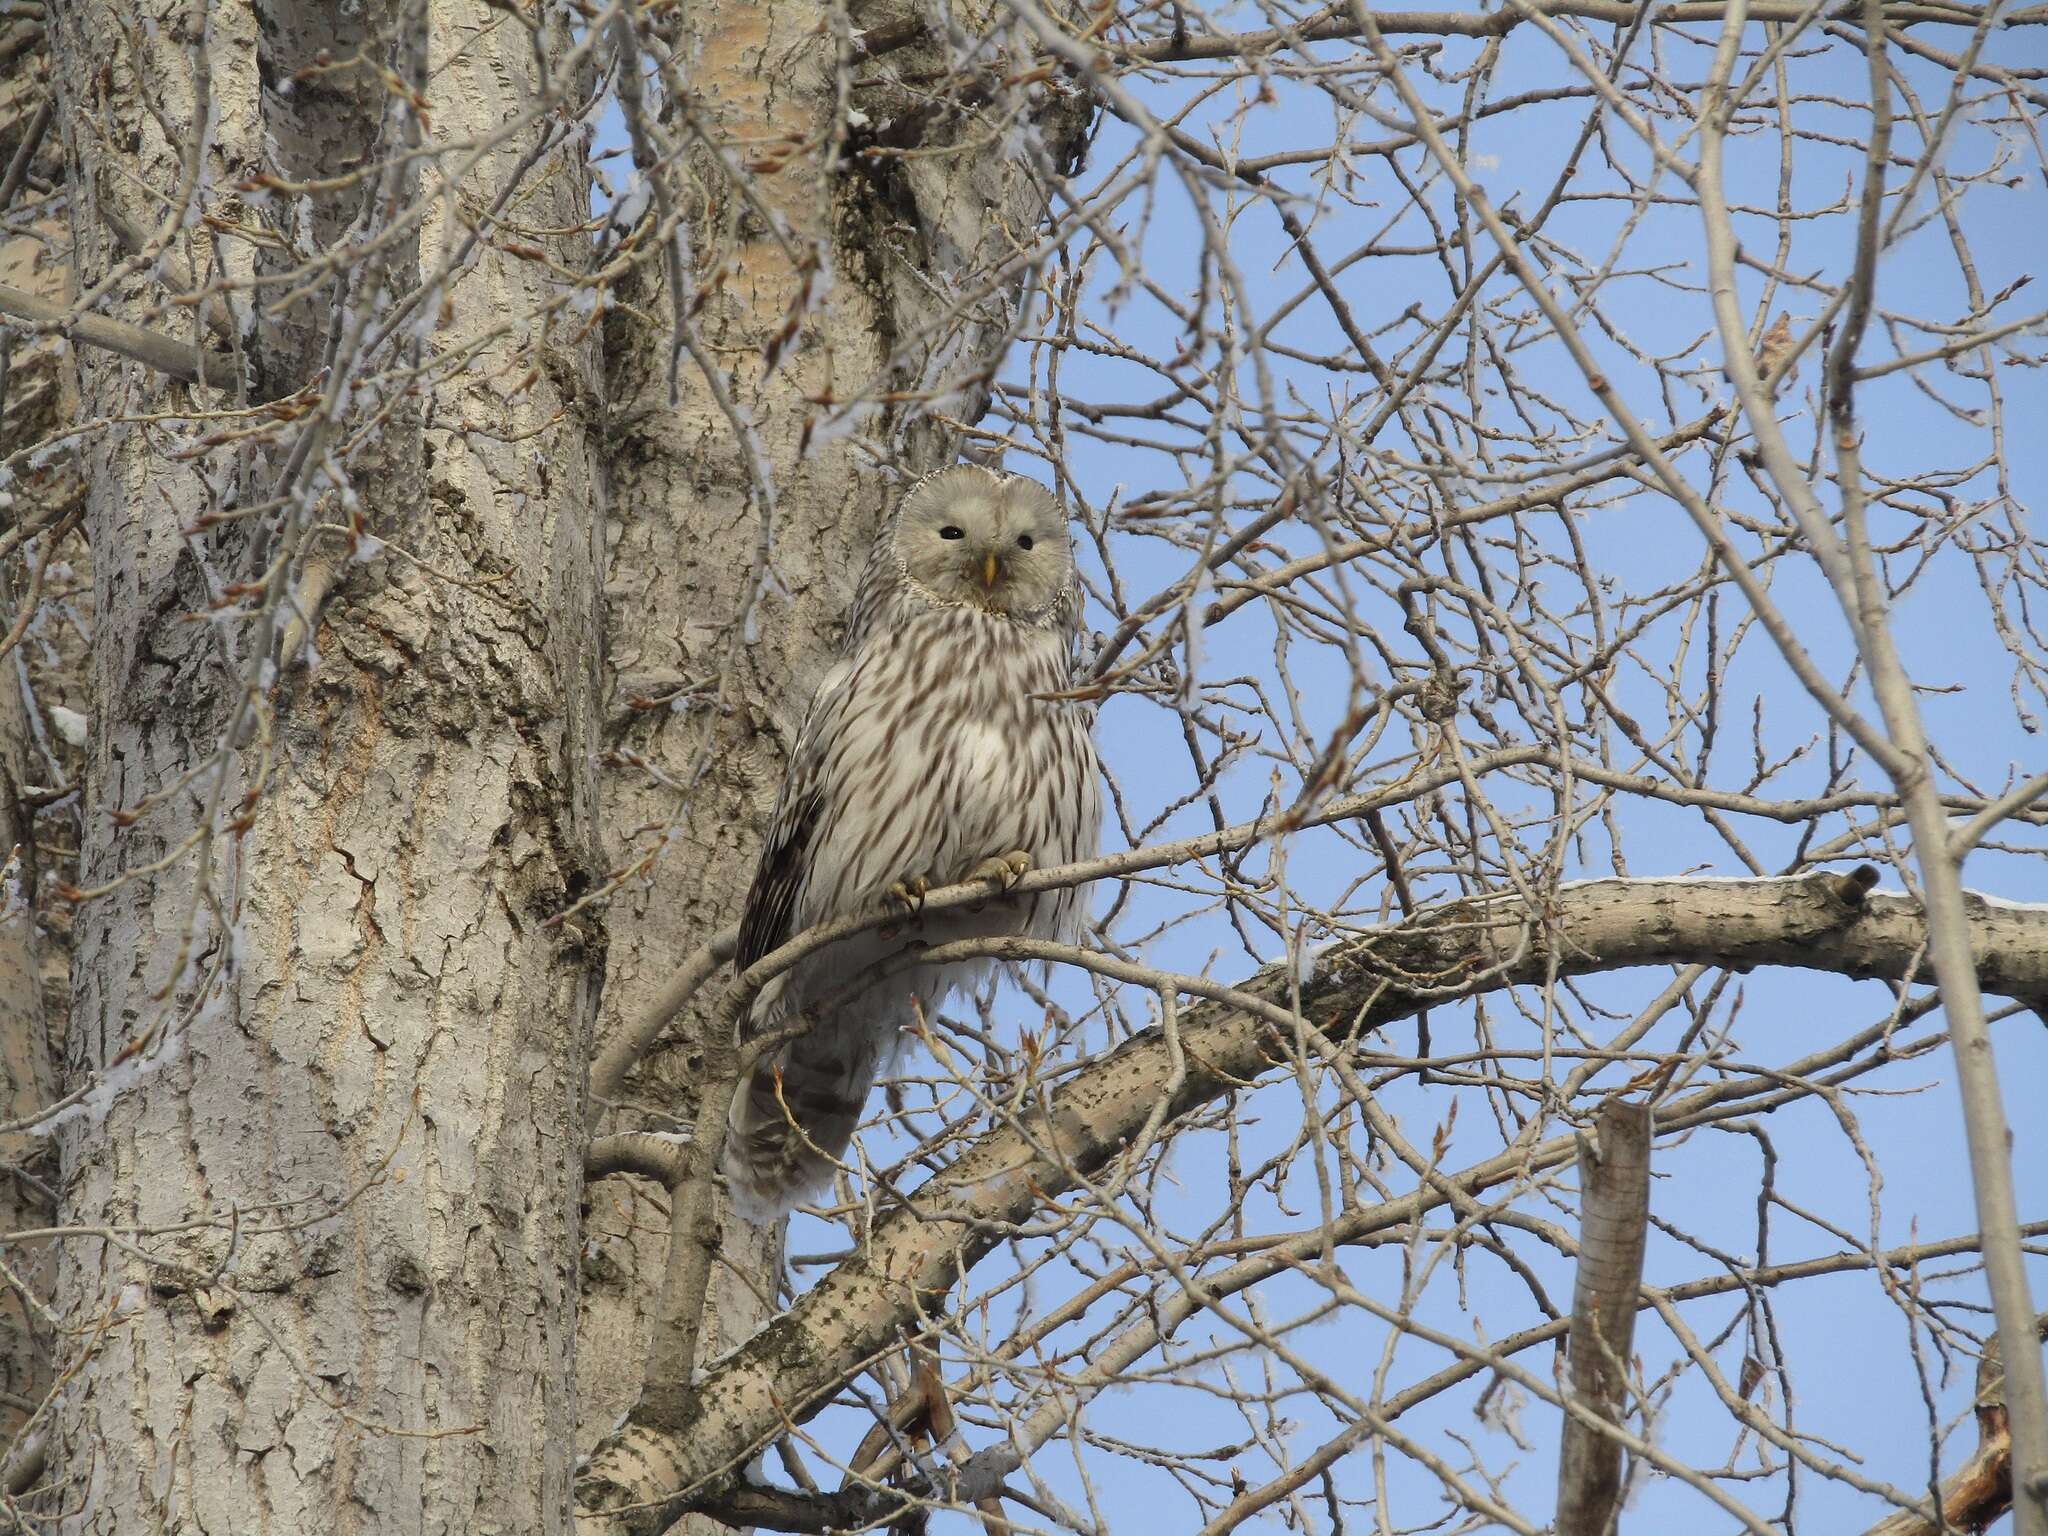 Image of Ural Owl